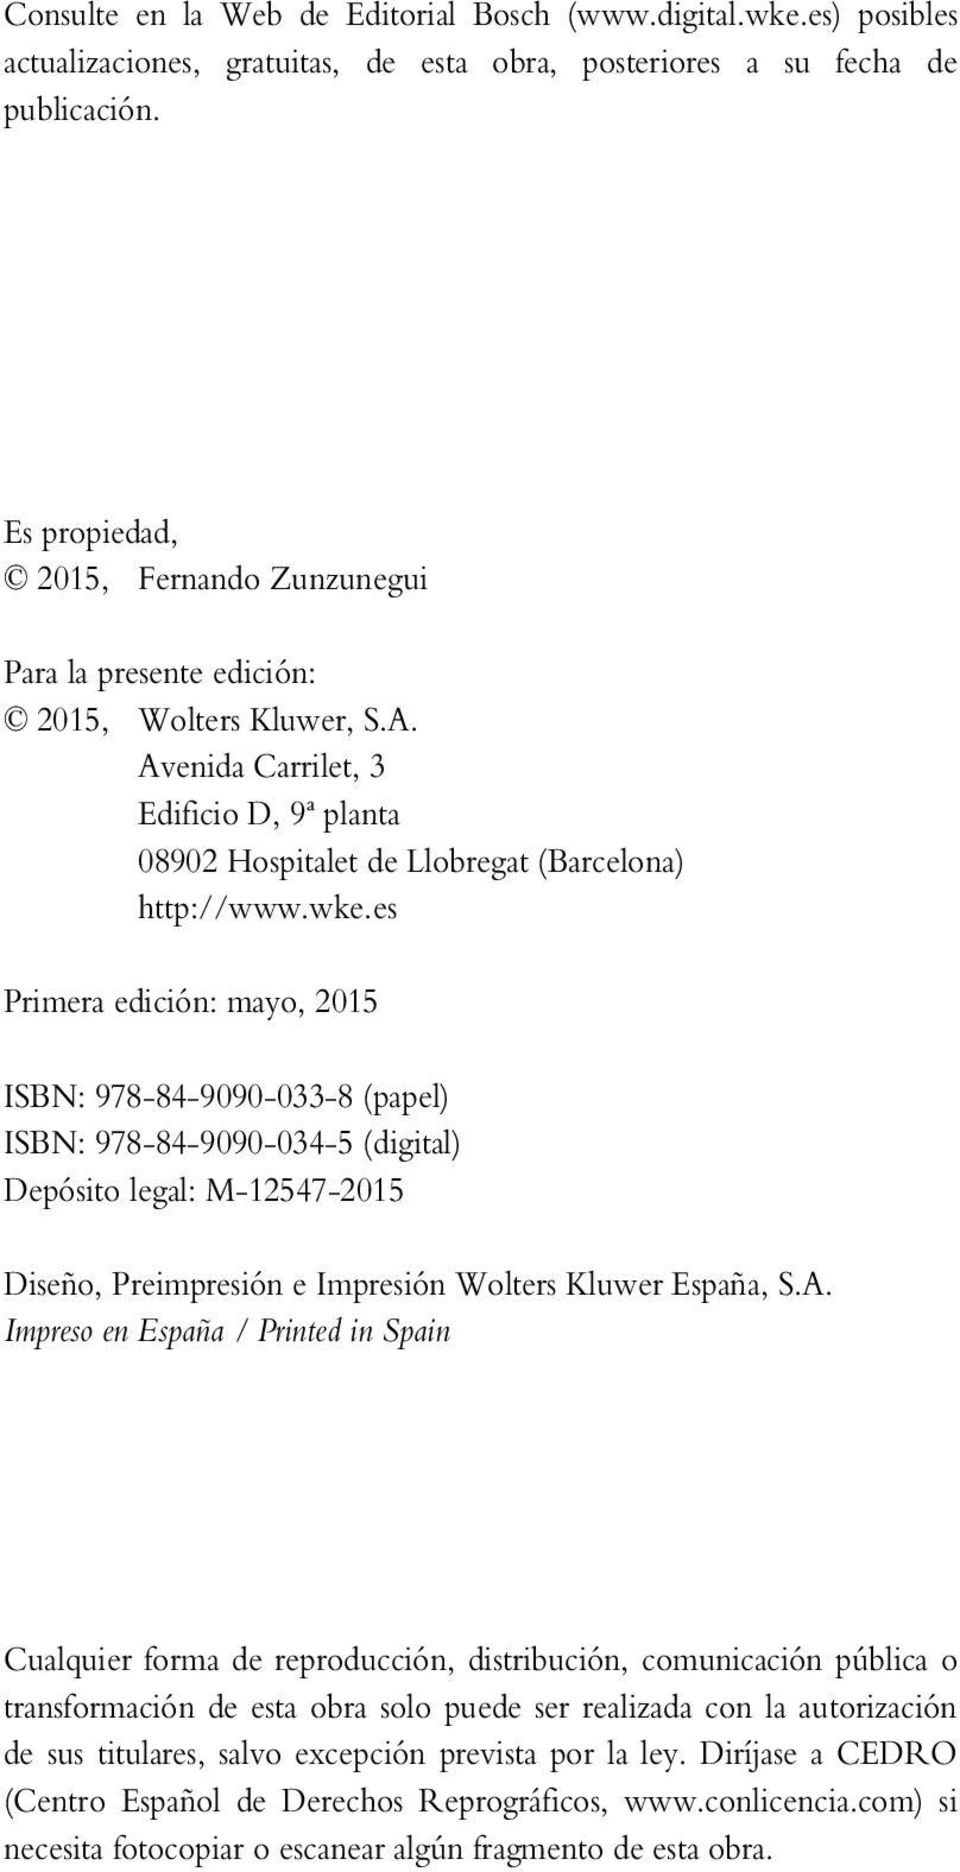 es Primera edición: mayo, 2015 ISBN: 978-84-9090-033-8 (papel) ISBN: 978-84-9090-034-5 (digital) Depósito legal: M-12547-2015 Diseño, Preimpresión e Impresión Wolters Kluwer España, S.A.